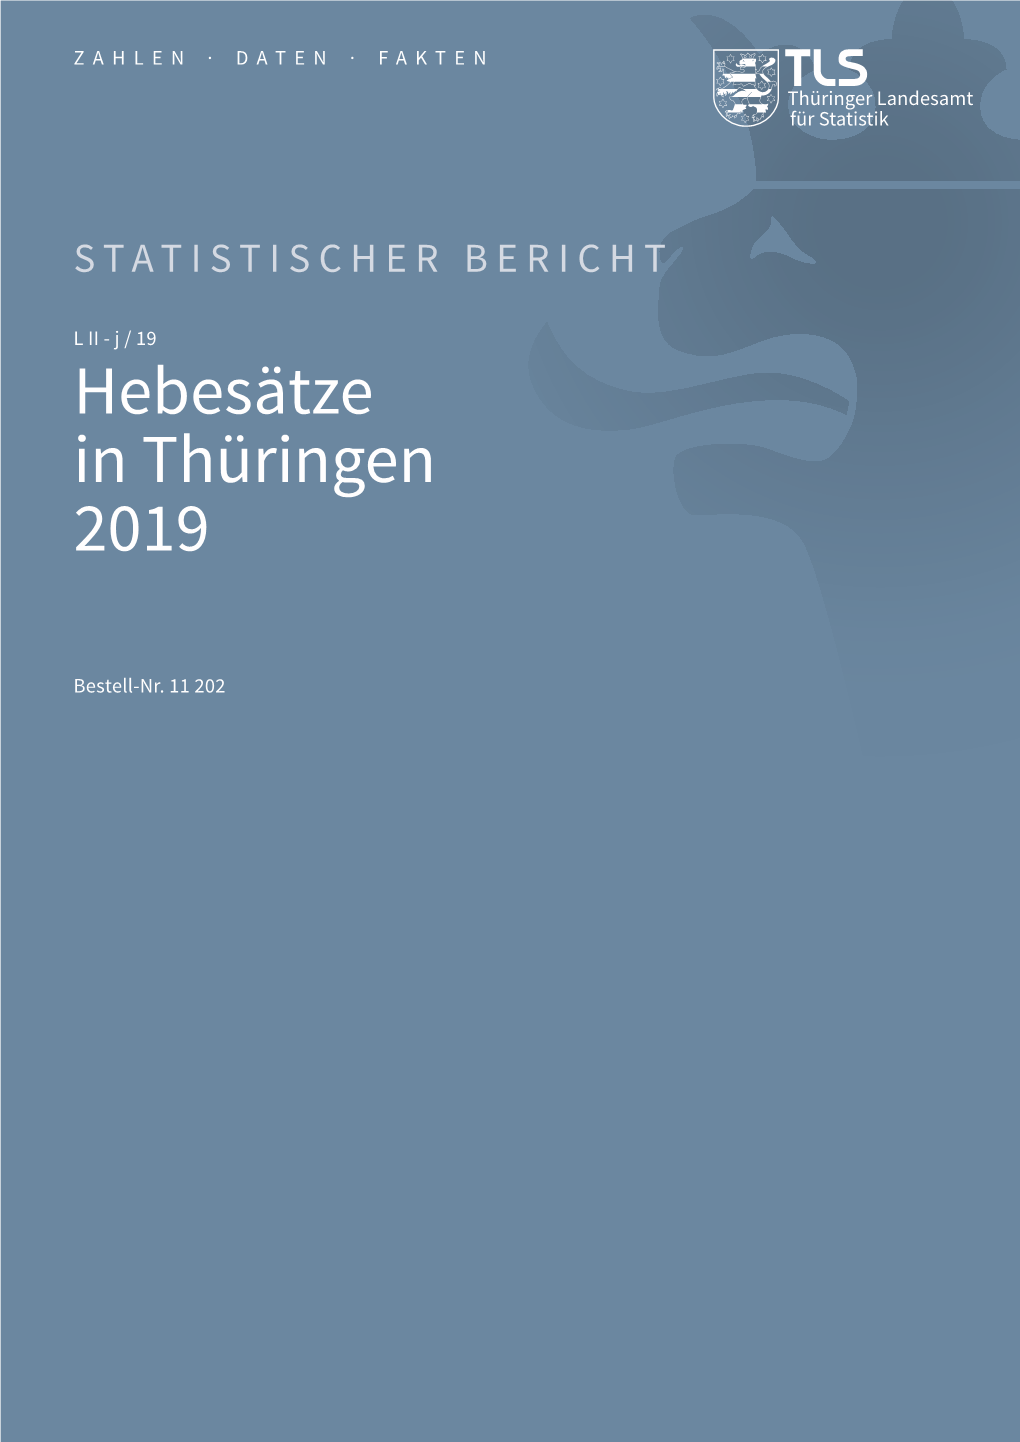 Hebesätze in Thüringen 2019